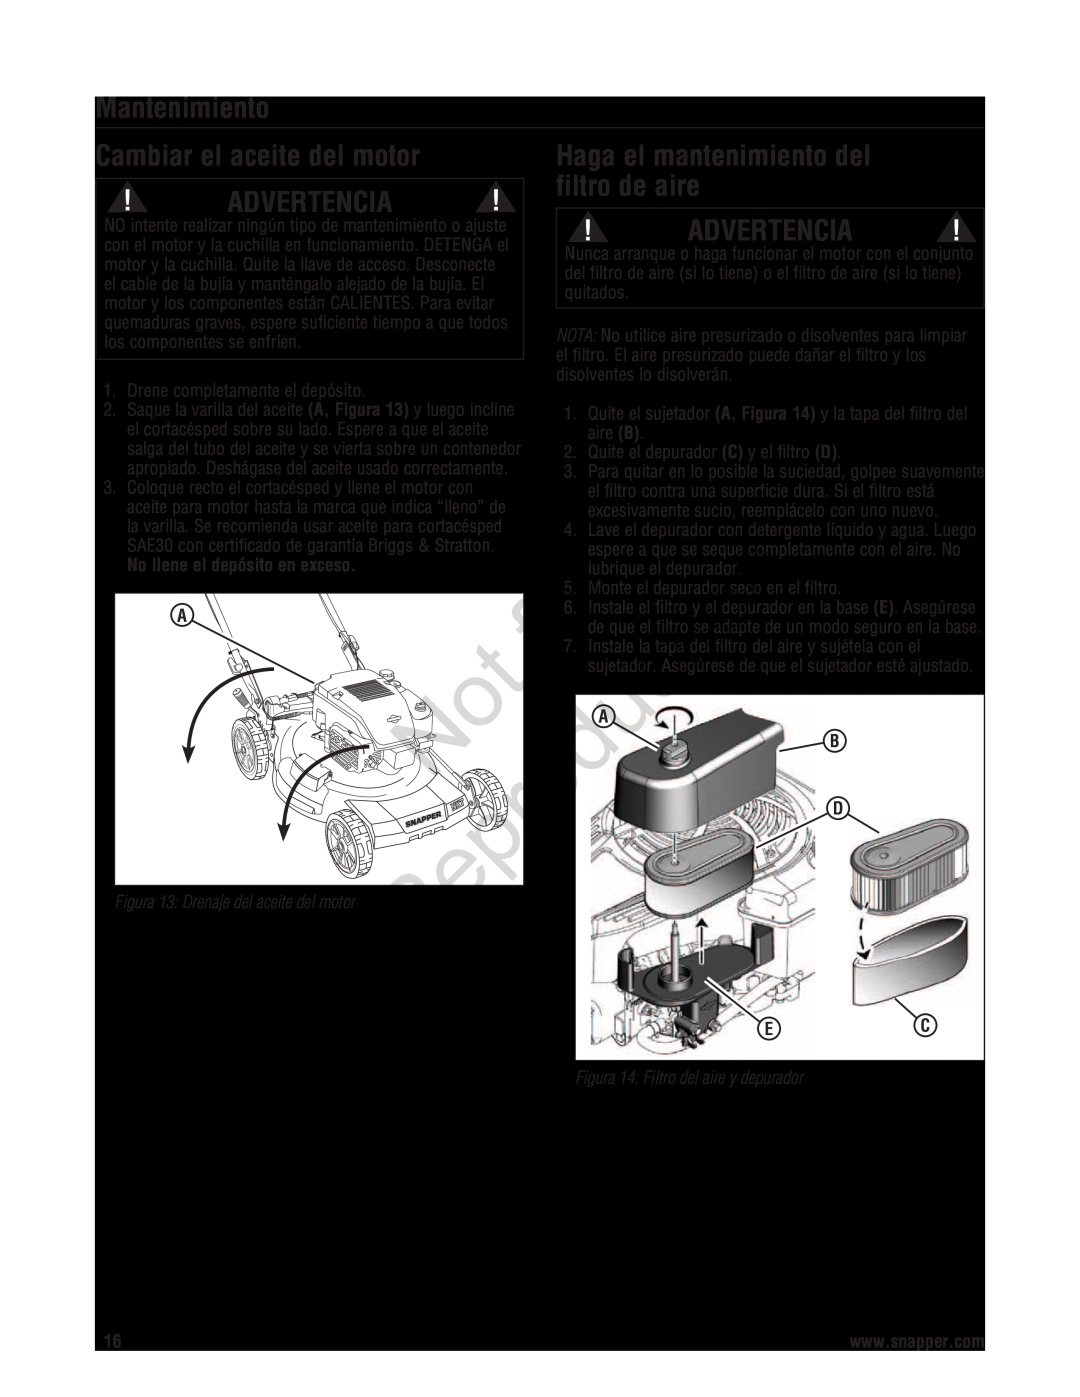 Snapper 7800696 manual Cambiar el aceite del motor, Haga el mantenimiento del, filtro de aire, Mantenimiento, Advertencia 